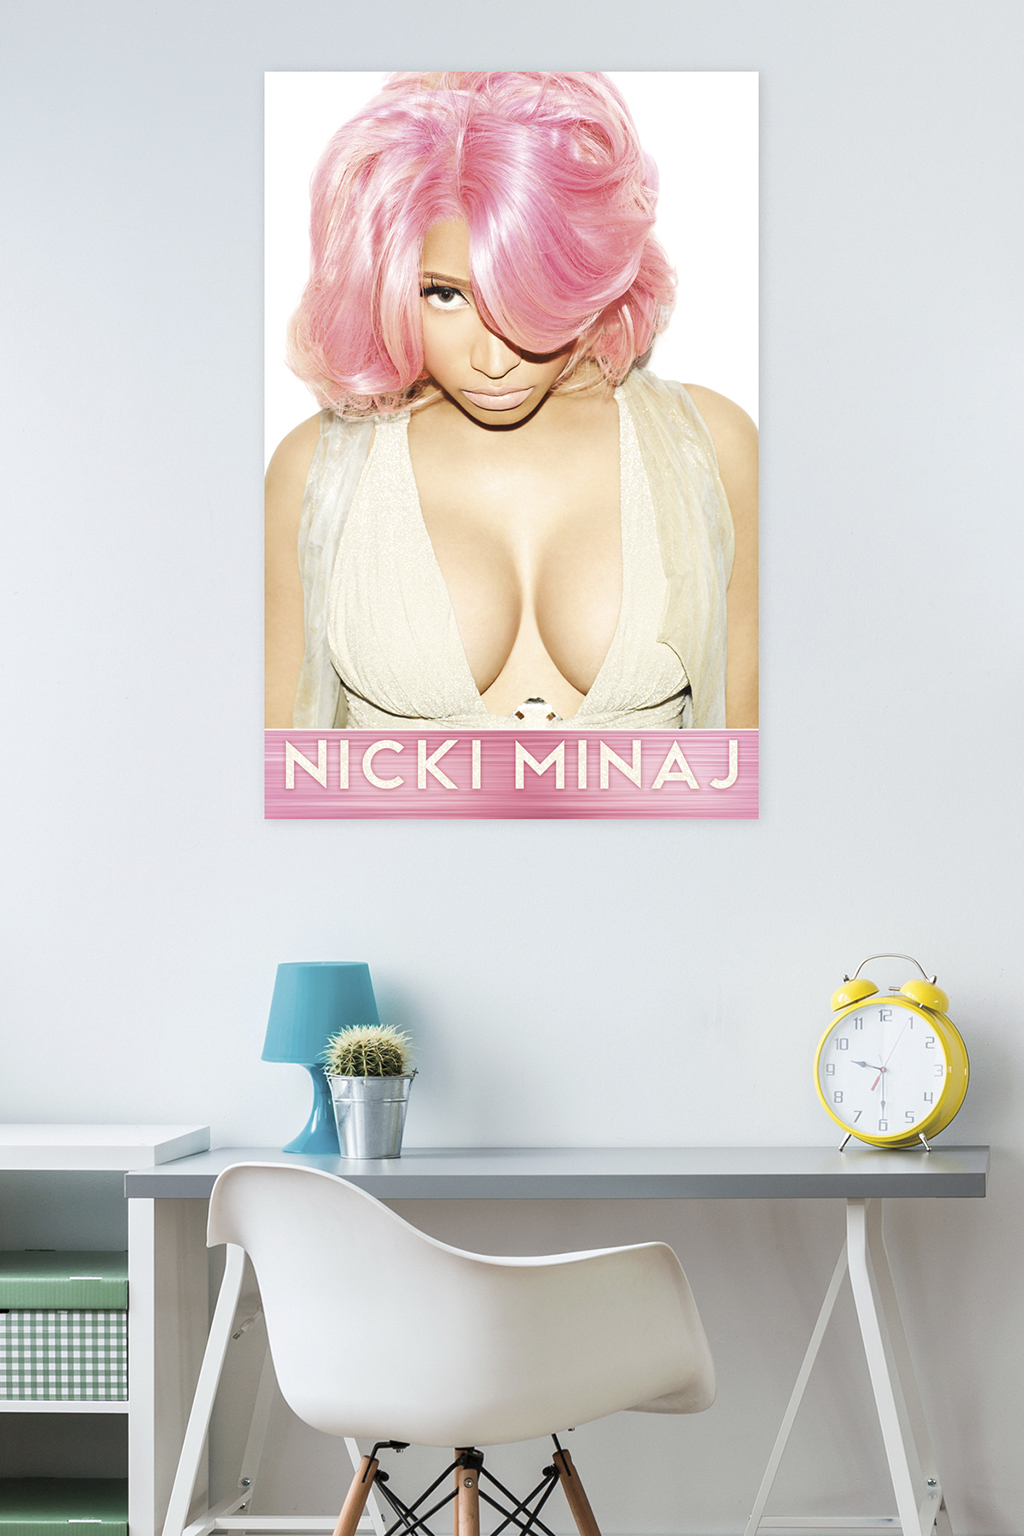 Nicki Minaj - Pink Wall Poster, 22.375" x 34" - image 2 of 2